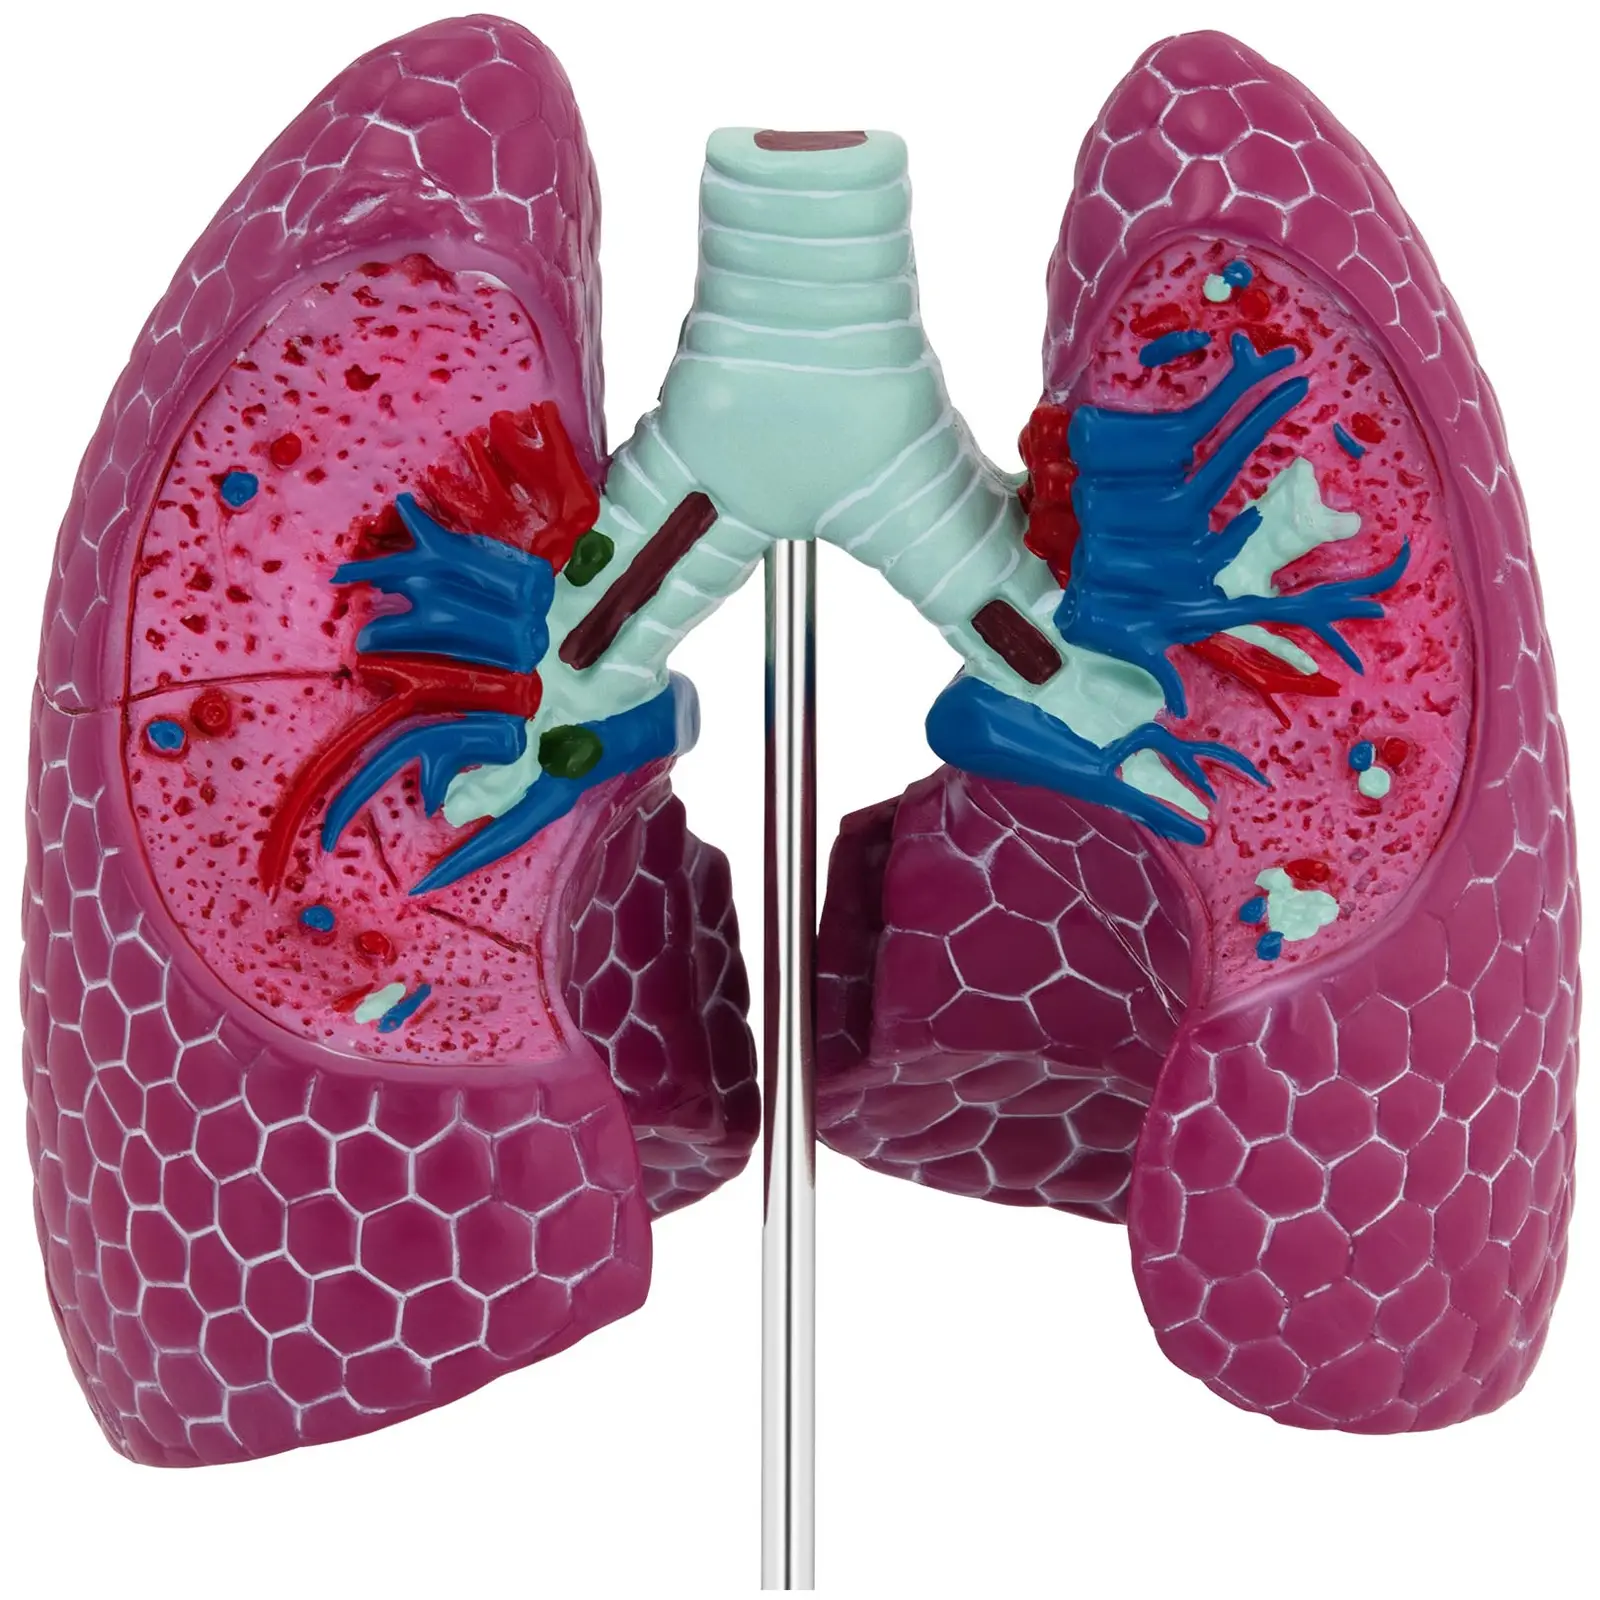 Lungenmodell - mit Pathologien